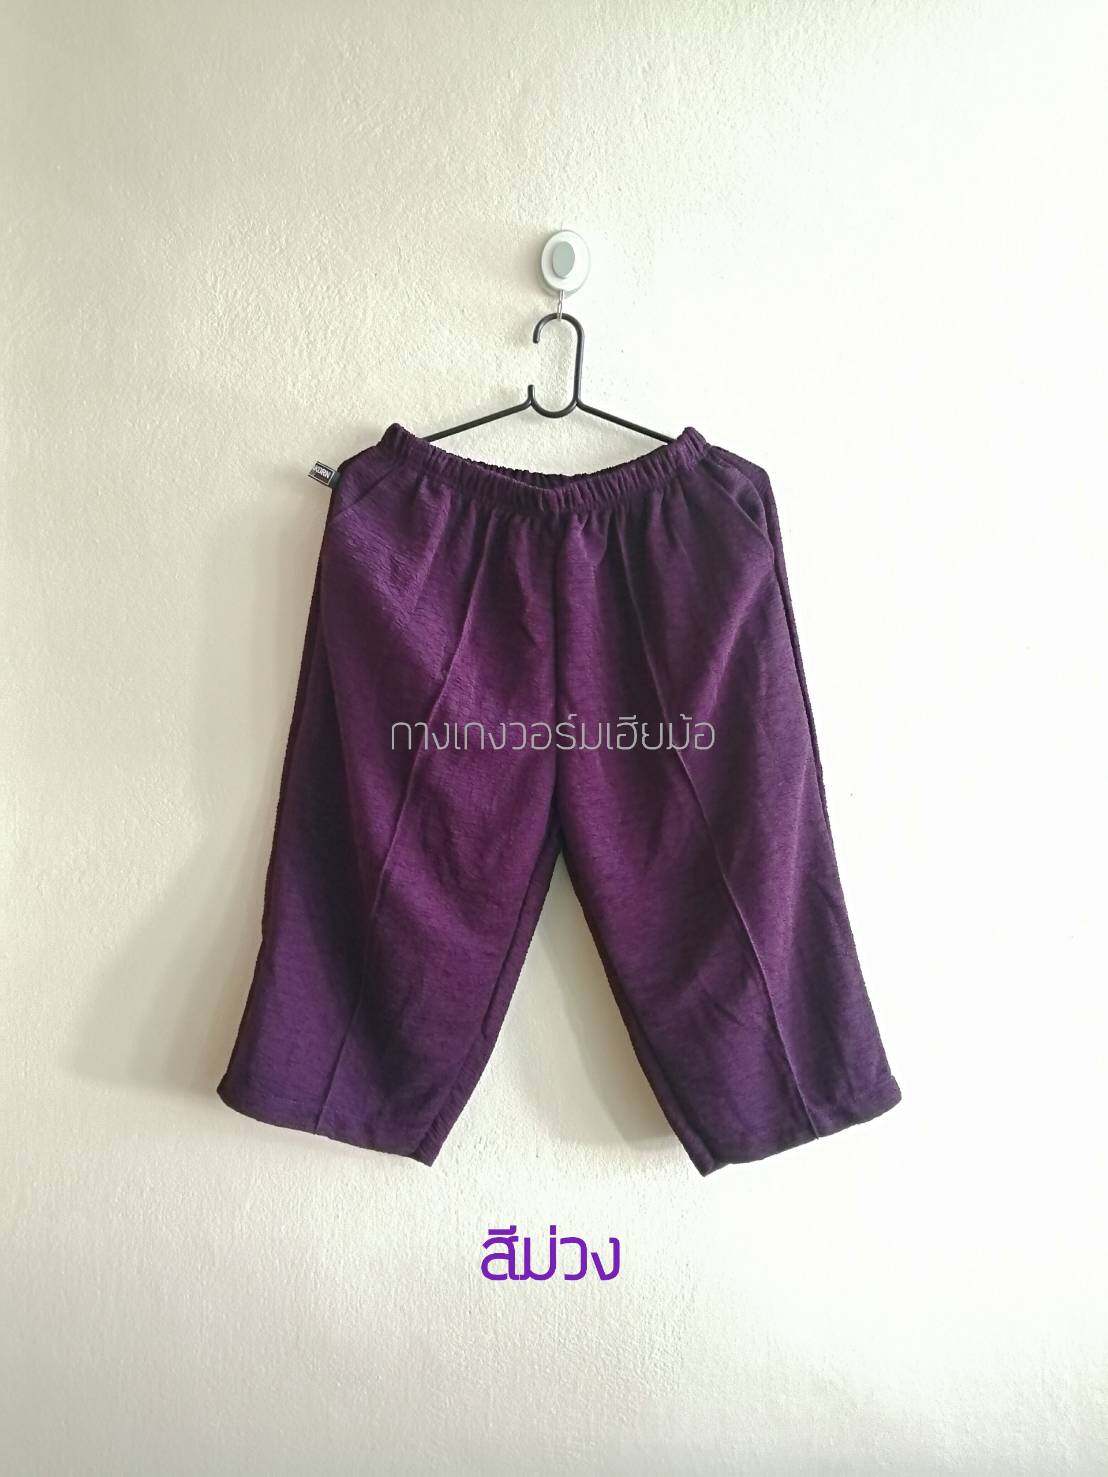 กางเกงหนัังไก่ กางเกงวอร์ม กางเกงสี่ส่วน กางเกงวอร์มผ้าย่น ผ้าหนังไก่ กางเกงผู้หญิง กางเกงแม่บ้าน กางเกงไซส์ใหญ่ กางเกงคนแก่